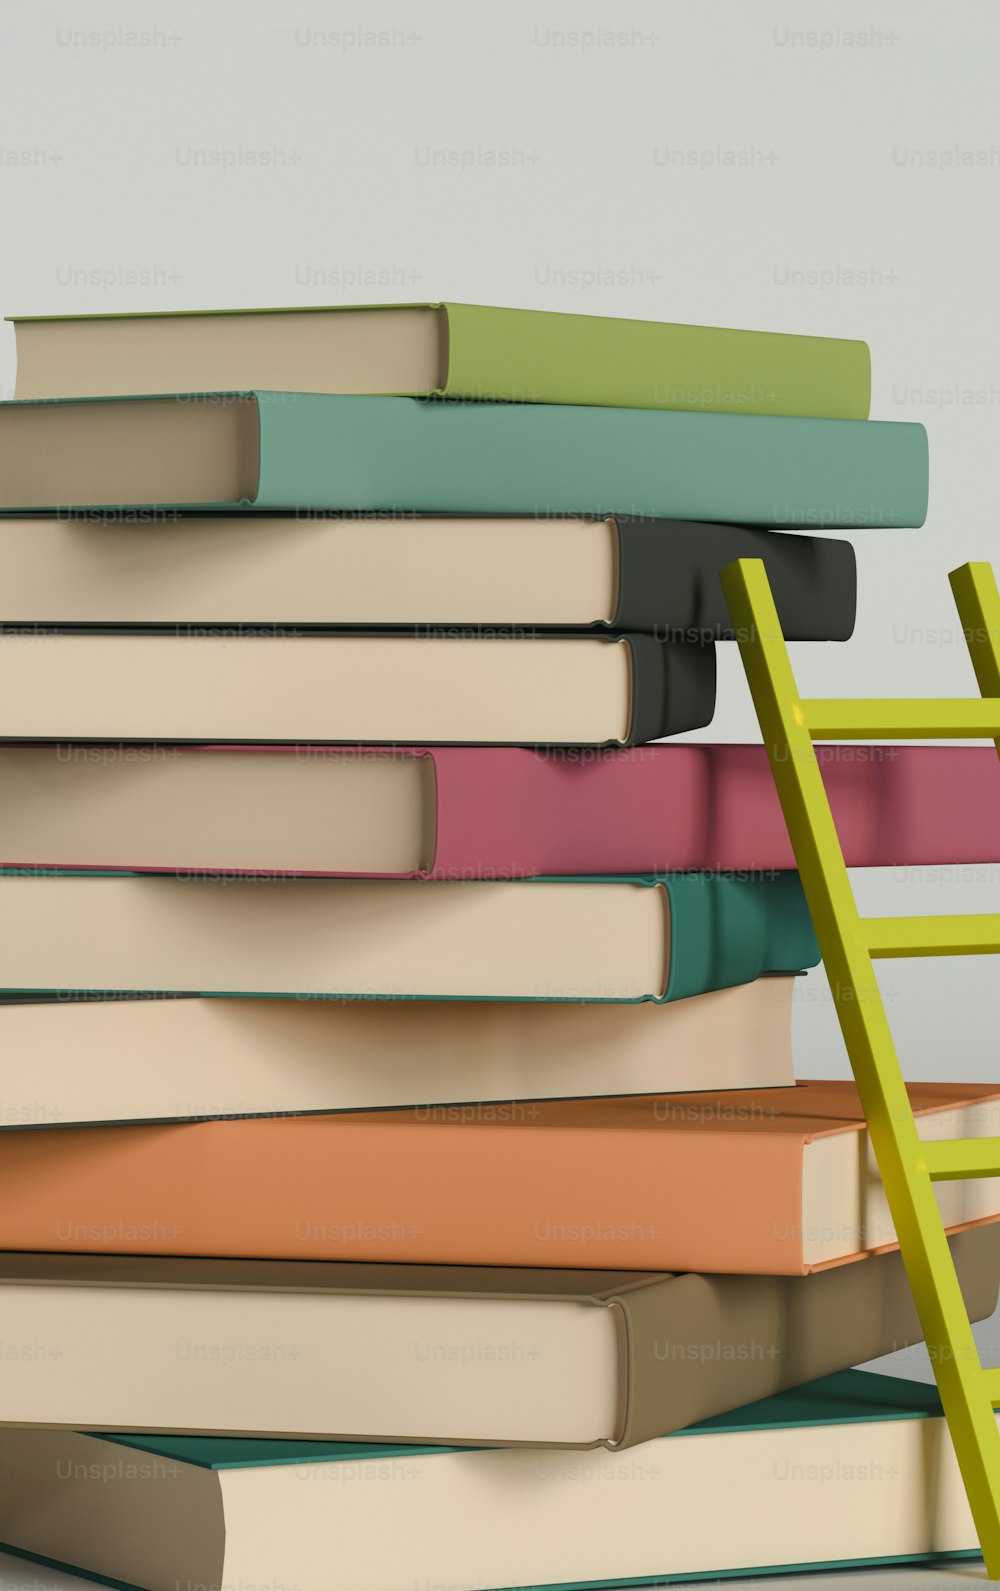 Una pila de libros con una escalera apoyada contra ella